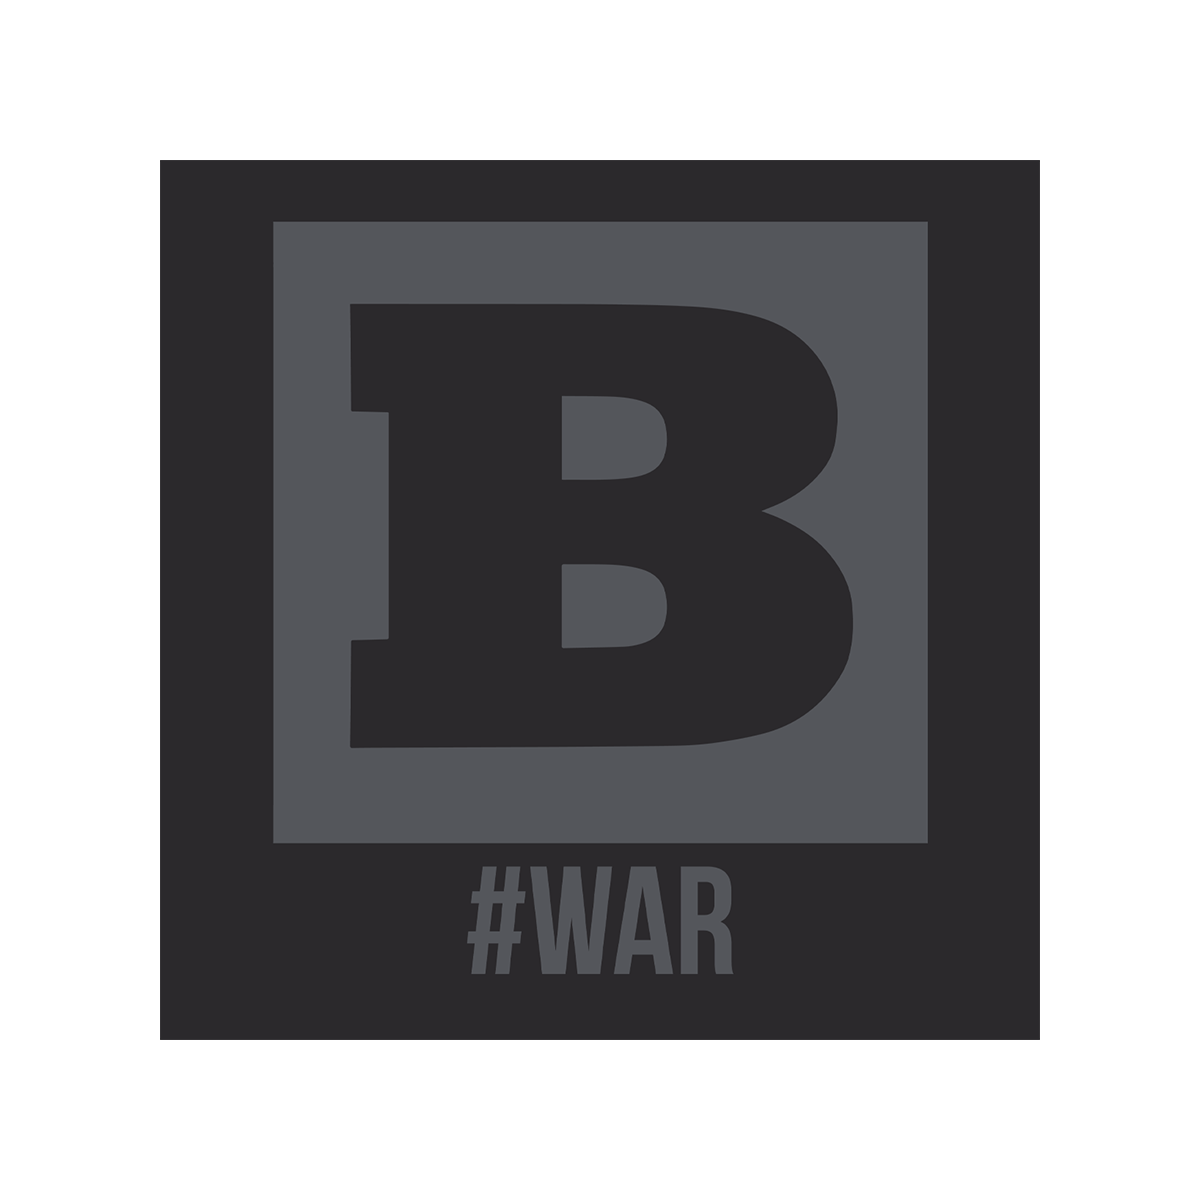 Breitbart #WAR T-Shirt - Black